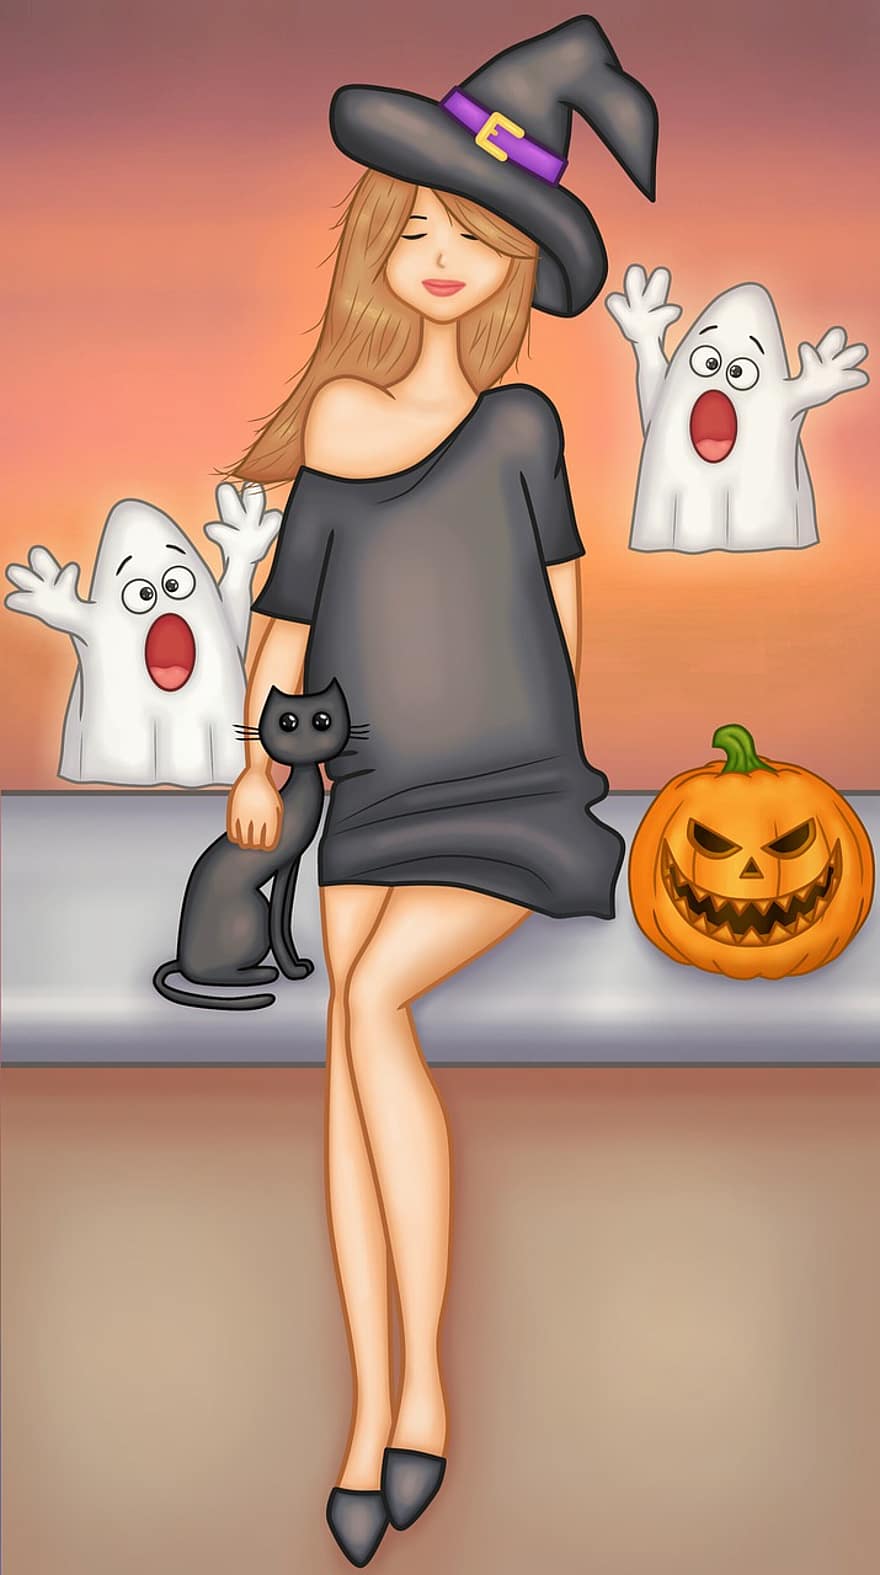 kvinne, heks, halloween, kostyme, gresskar, spøkelser, katt